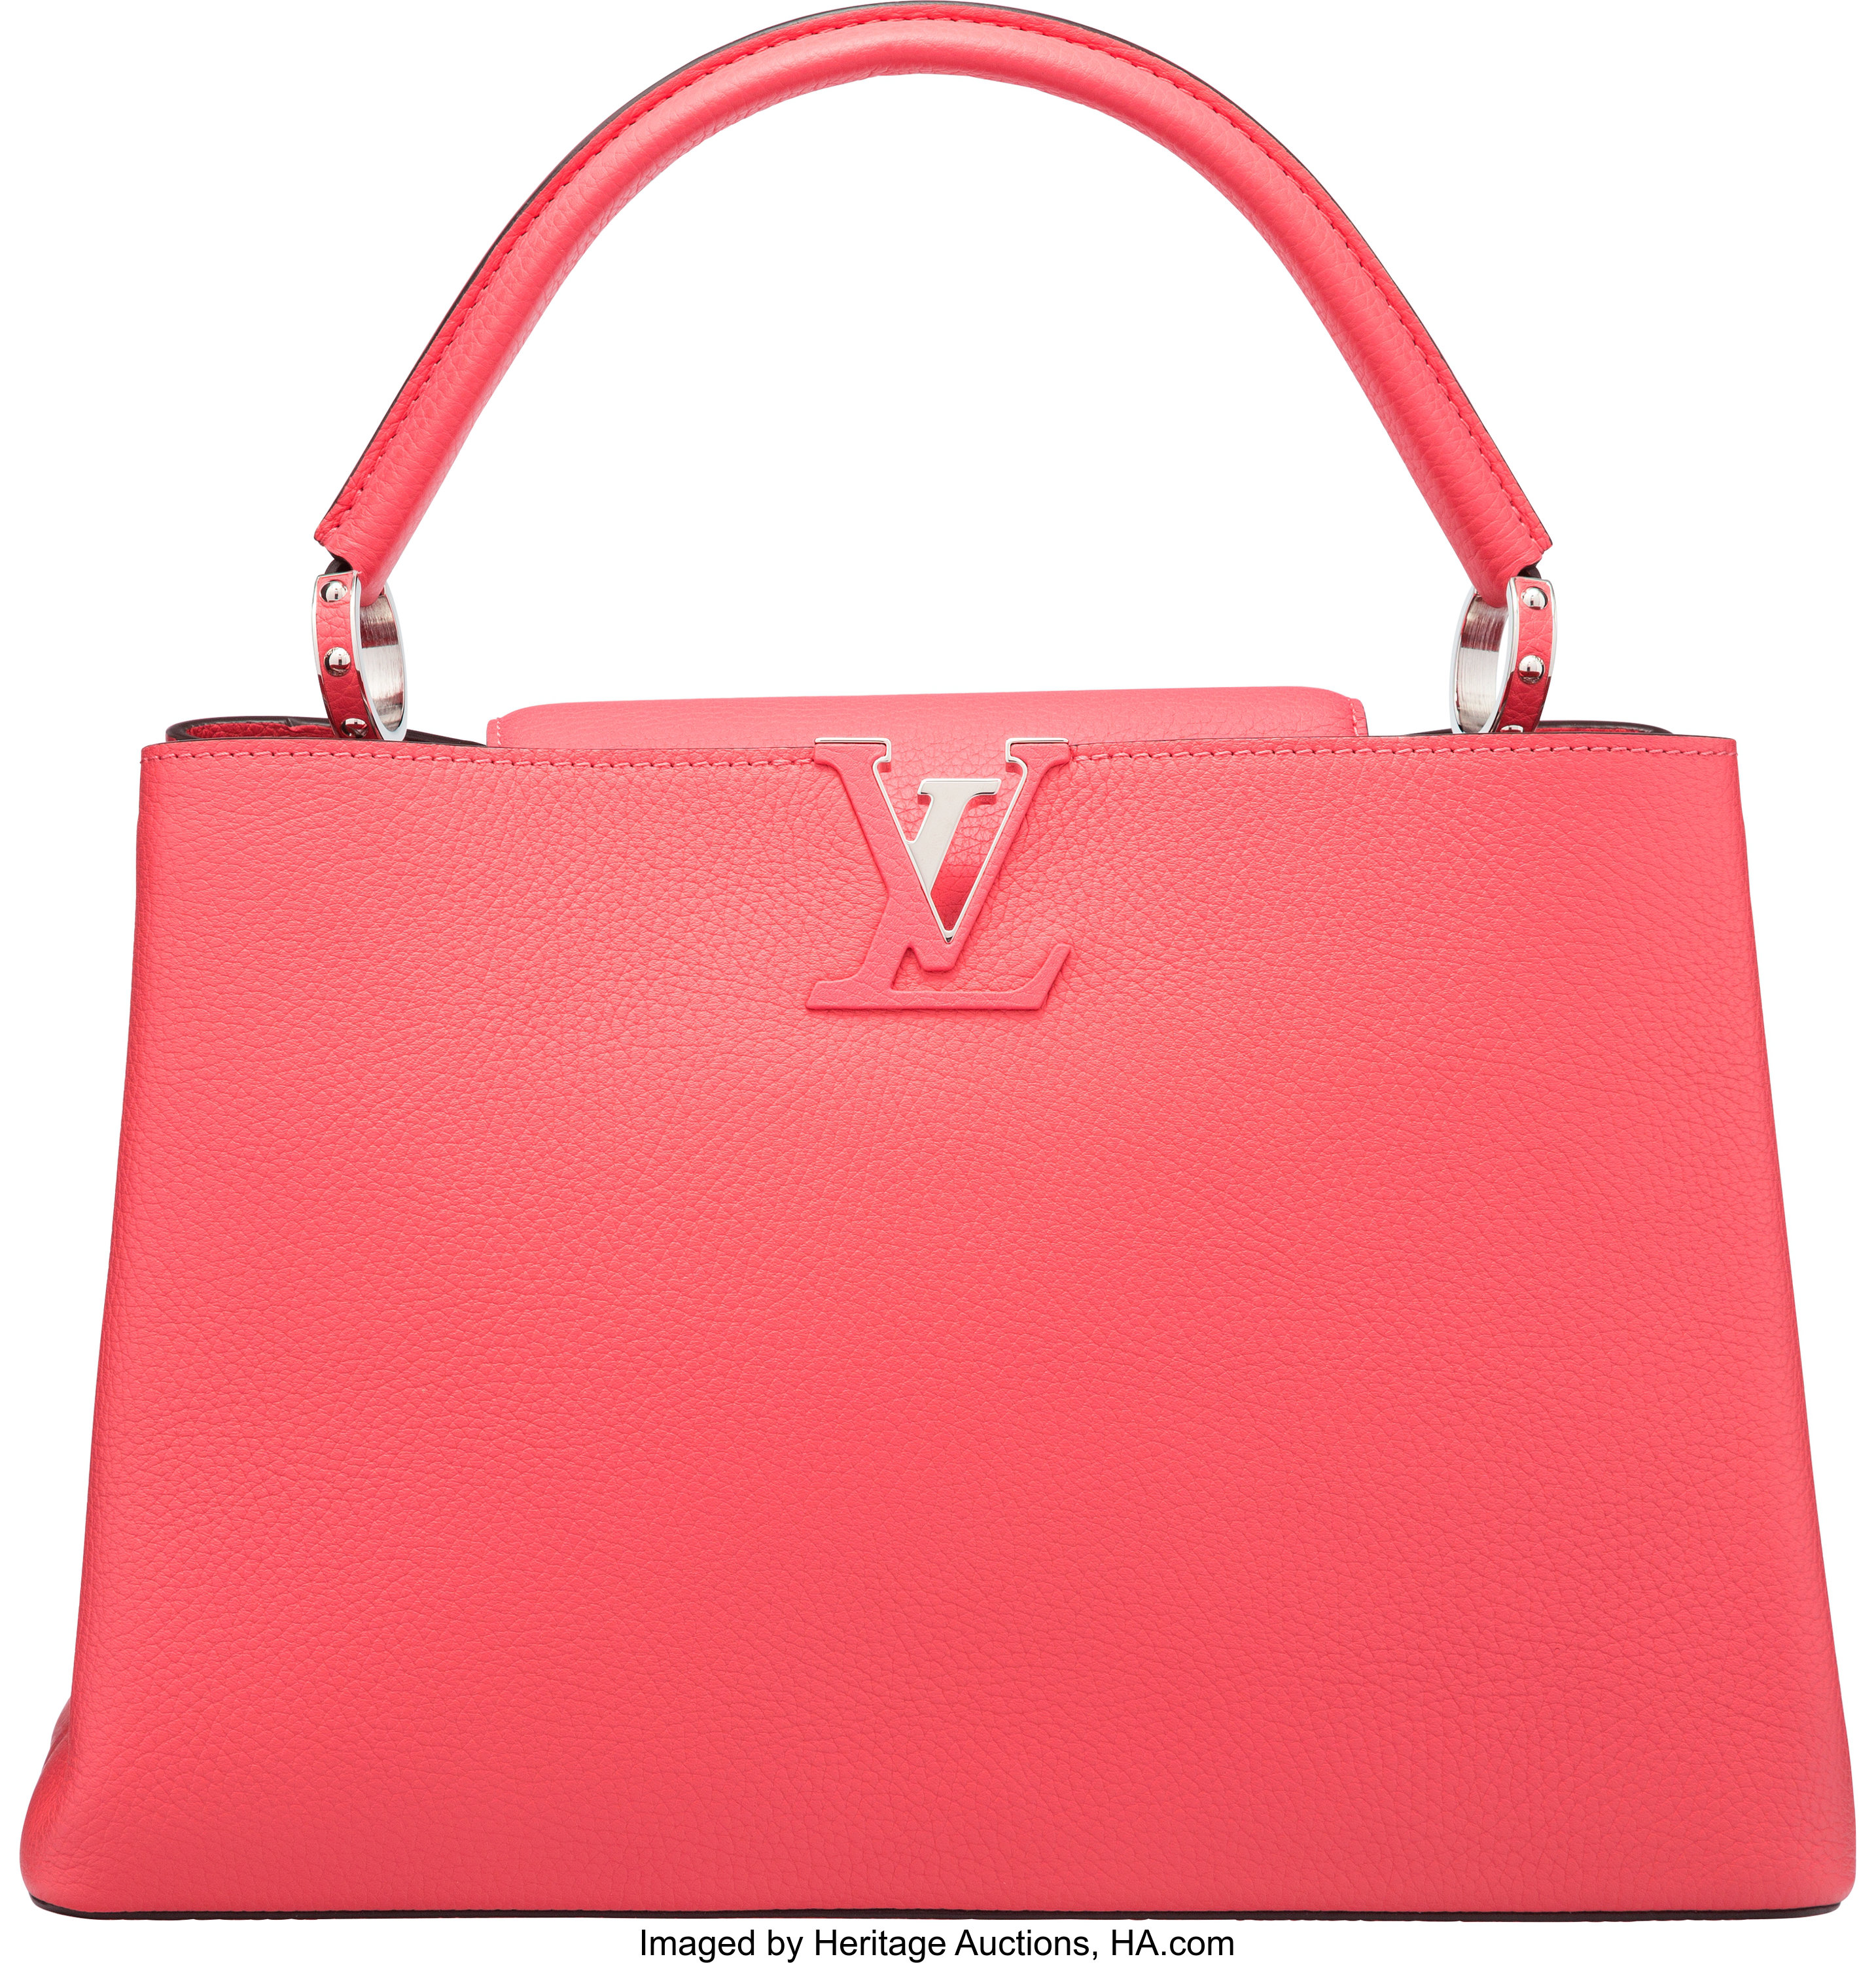 Sold at Auction: Louis Vuitton, A Louis Vuitton Capucine bag in